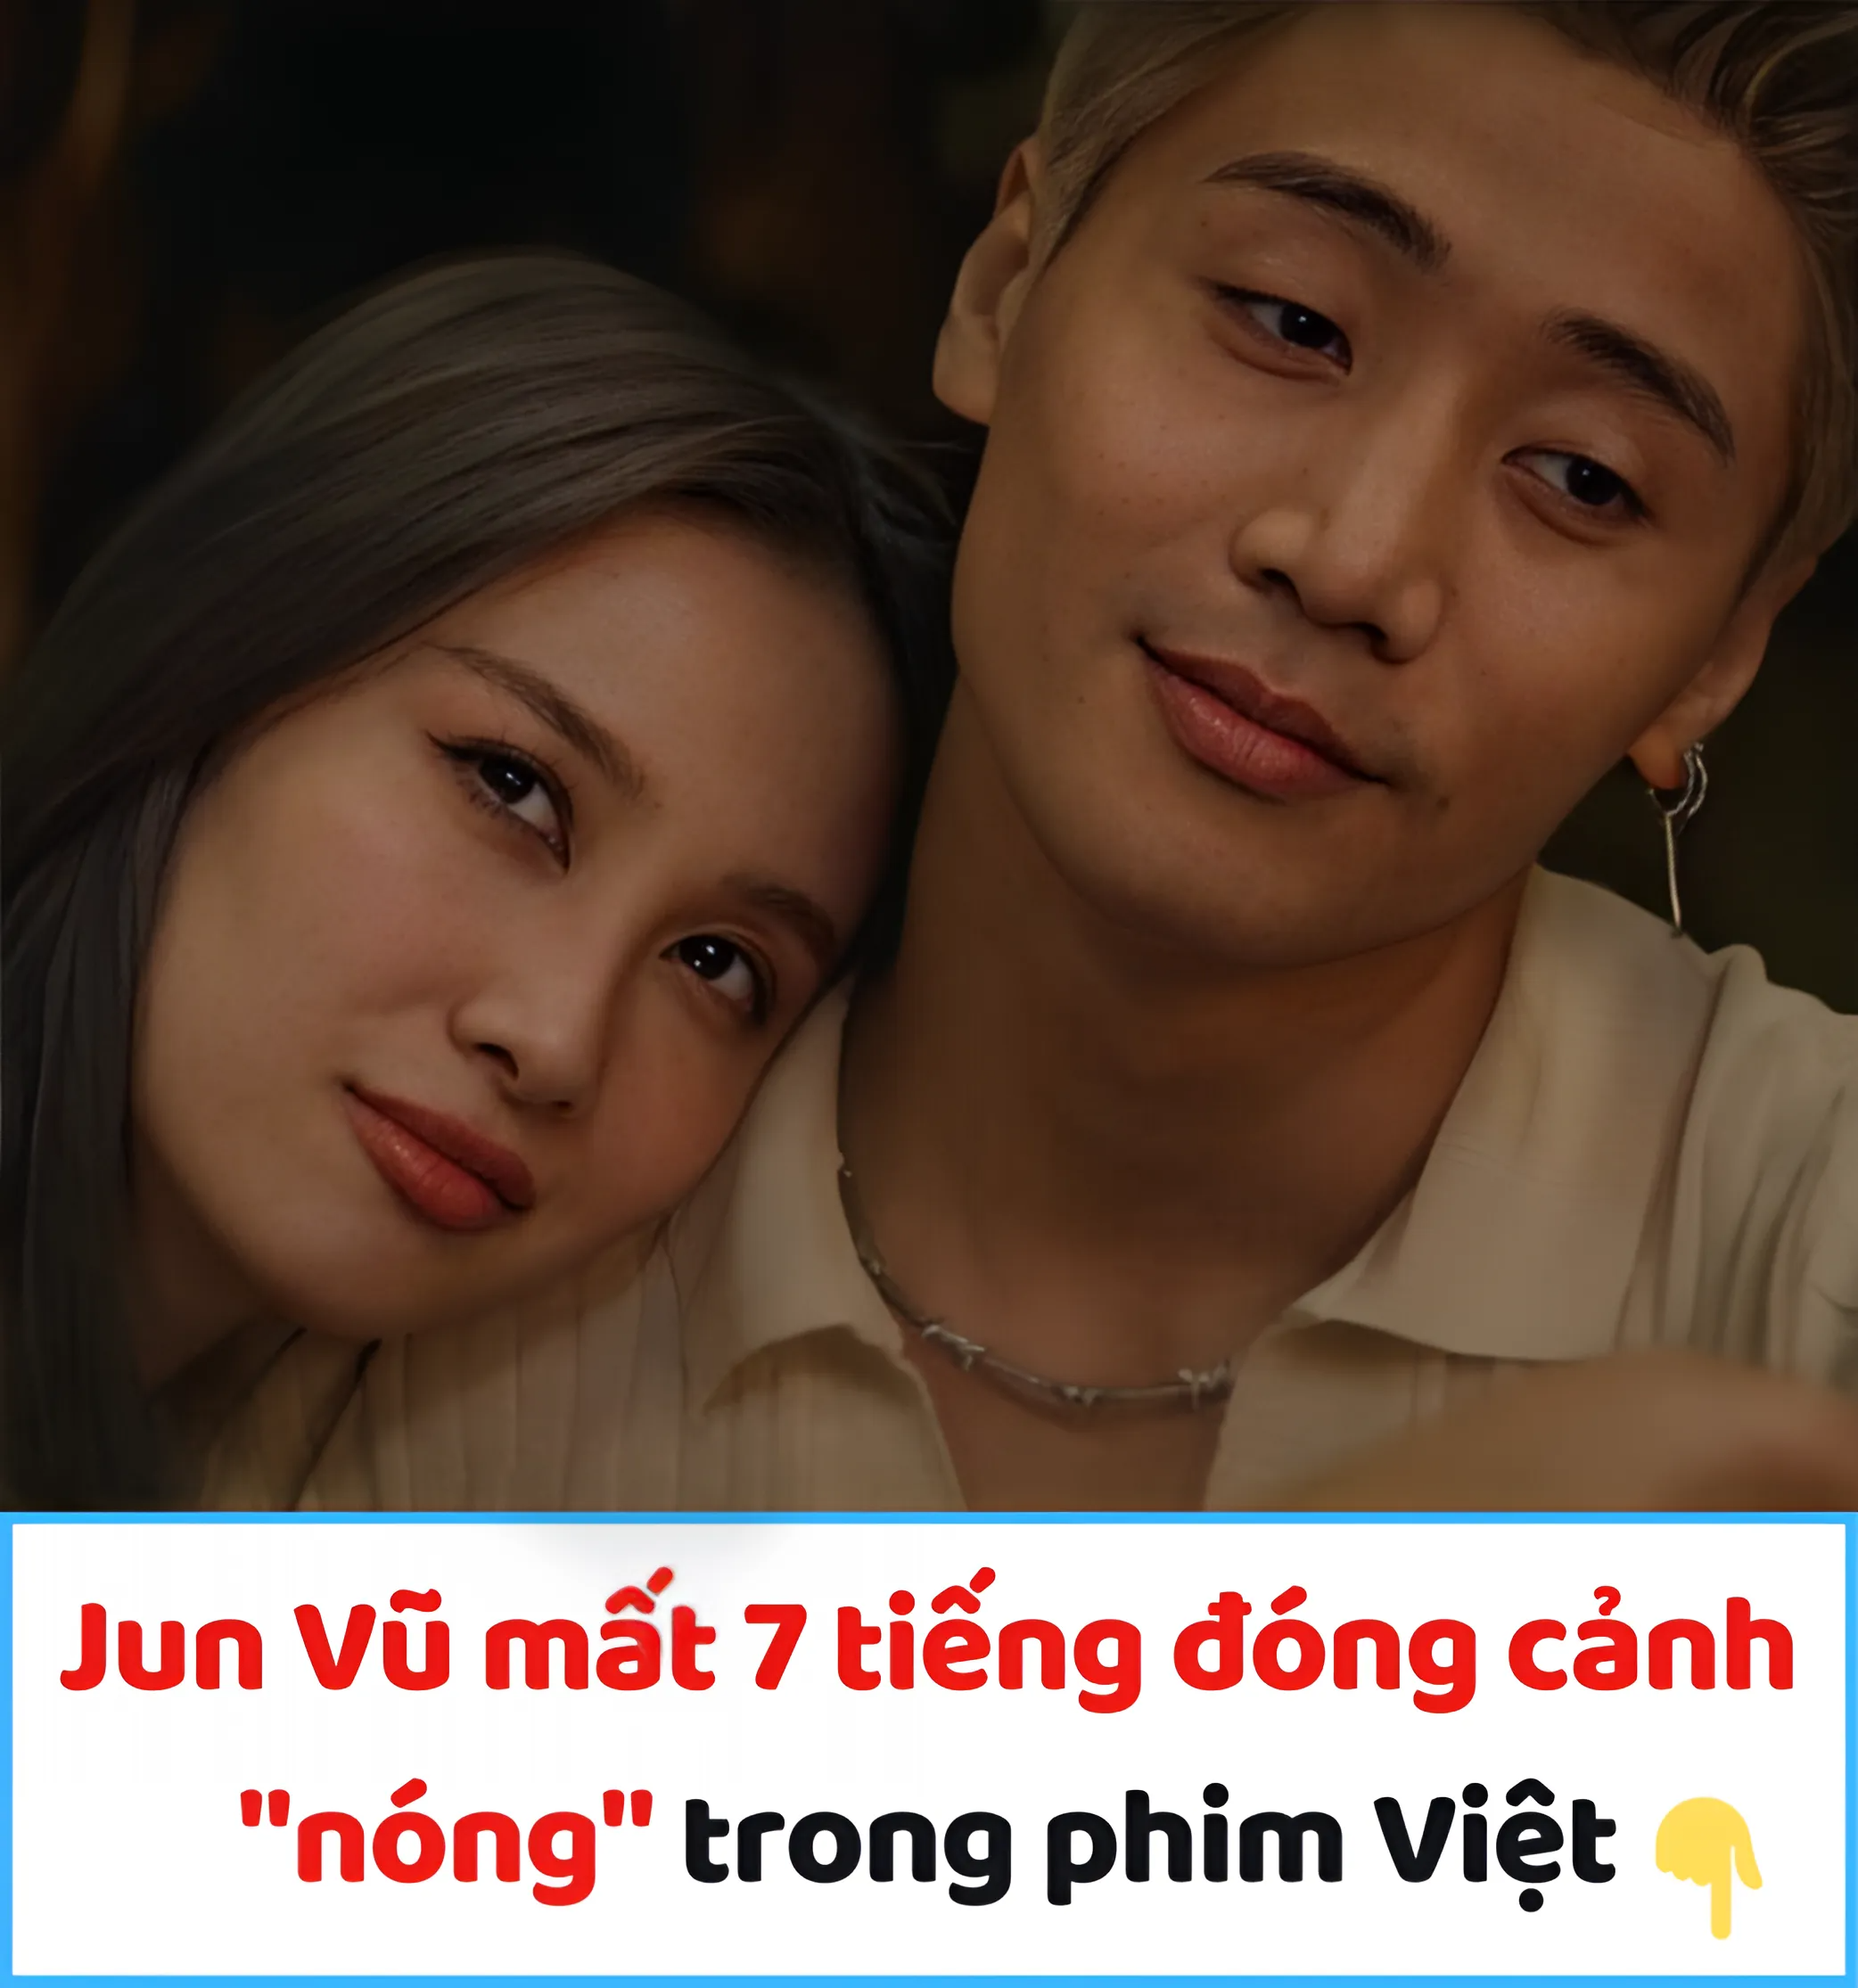 Jun Vũ mất 7 tiếng đóng cảnh “nóng” trong phim Việt